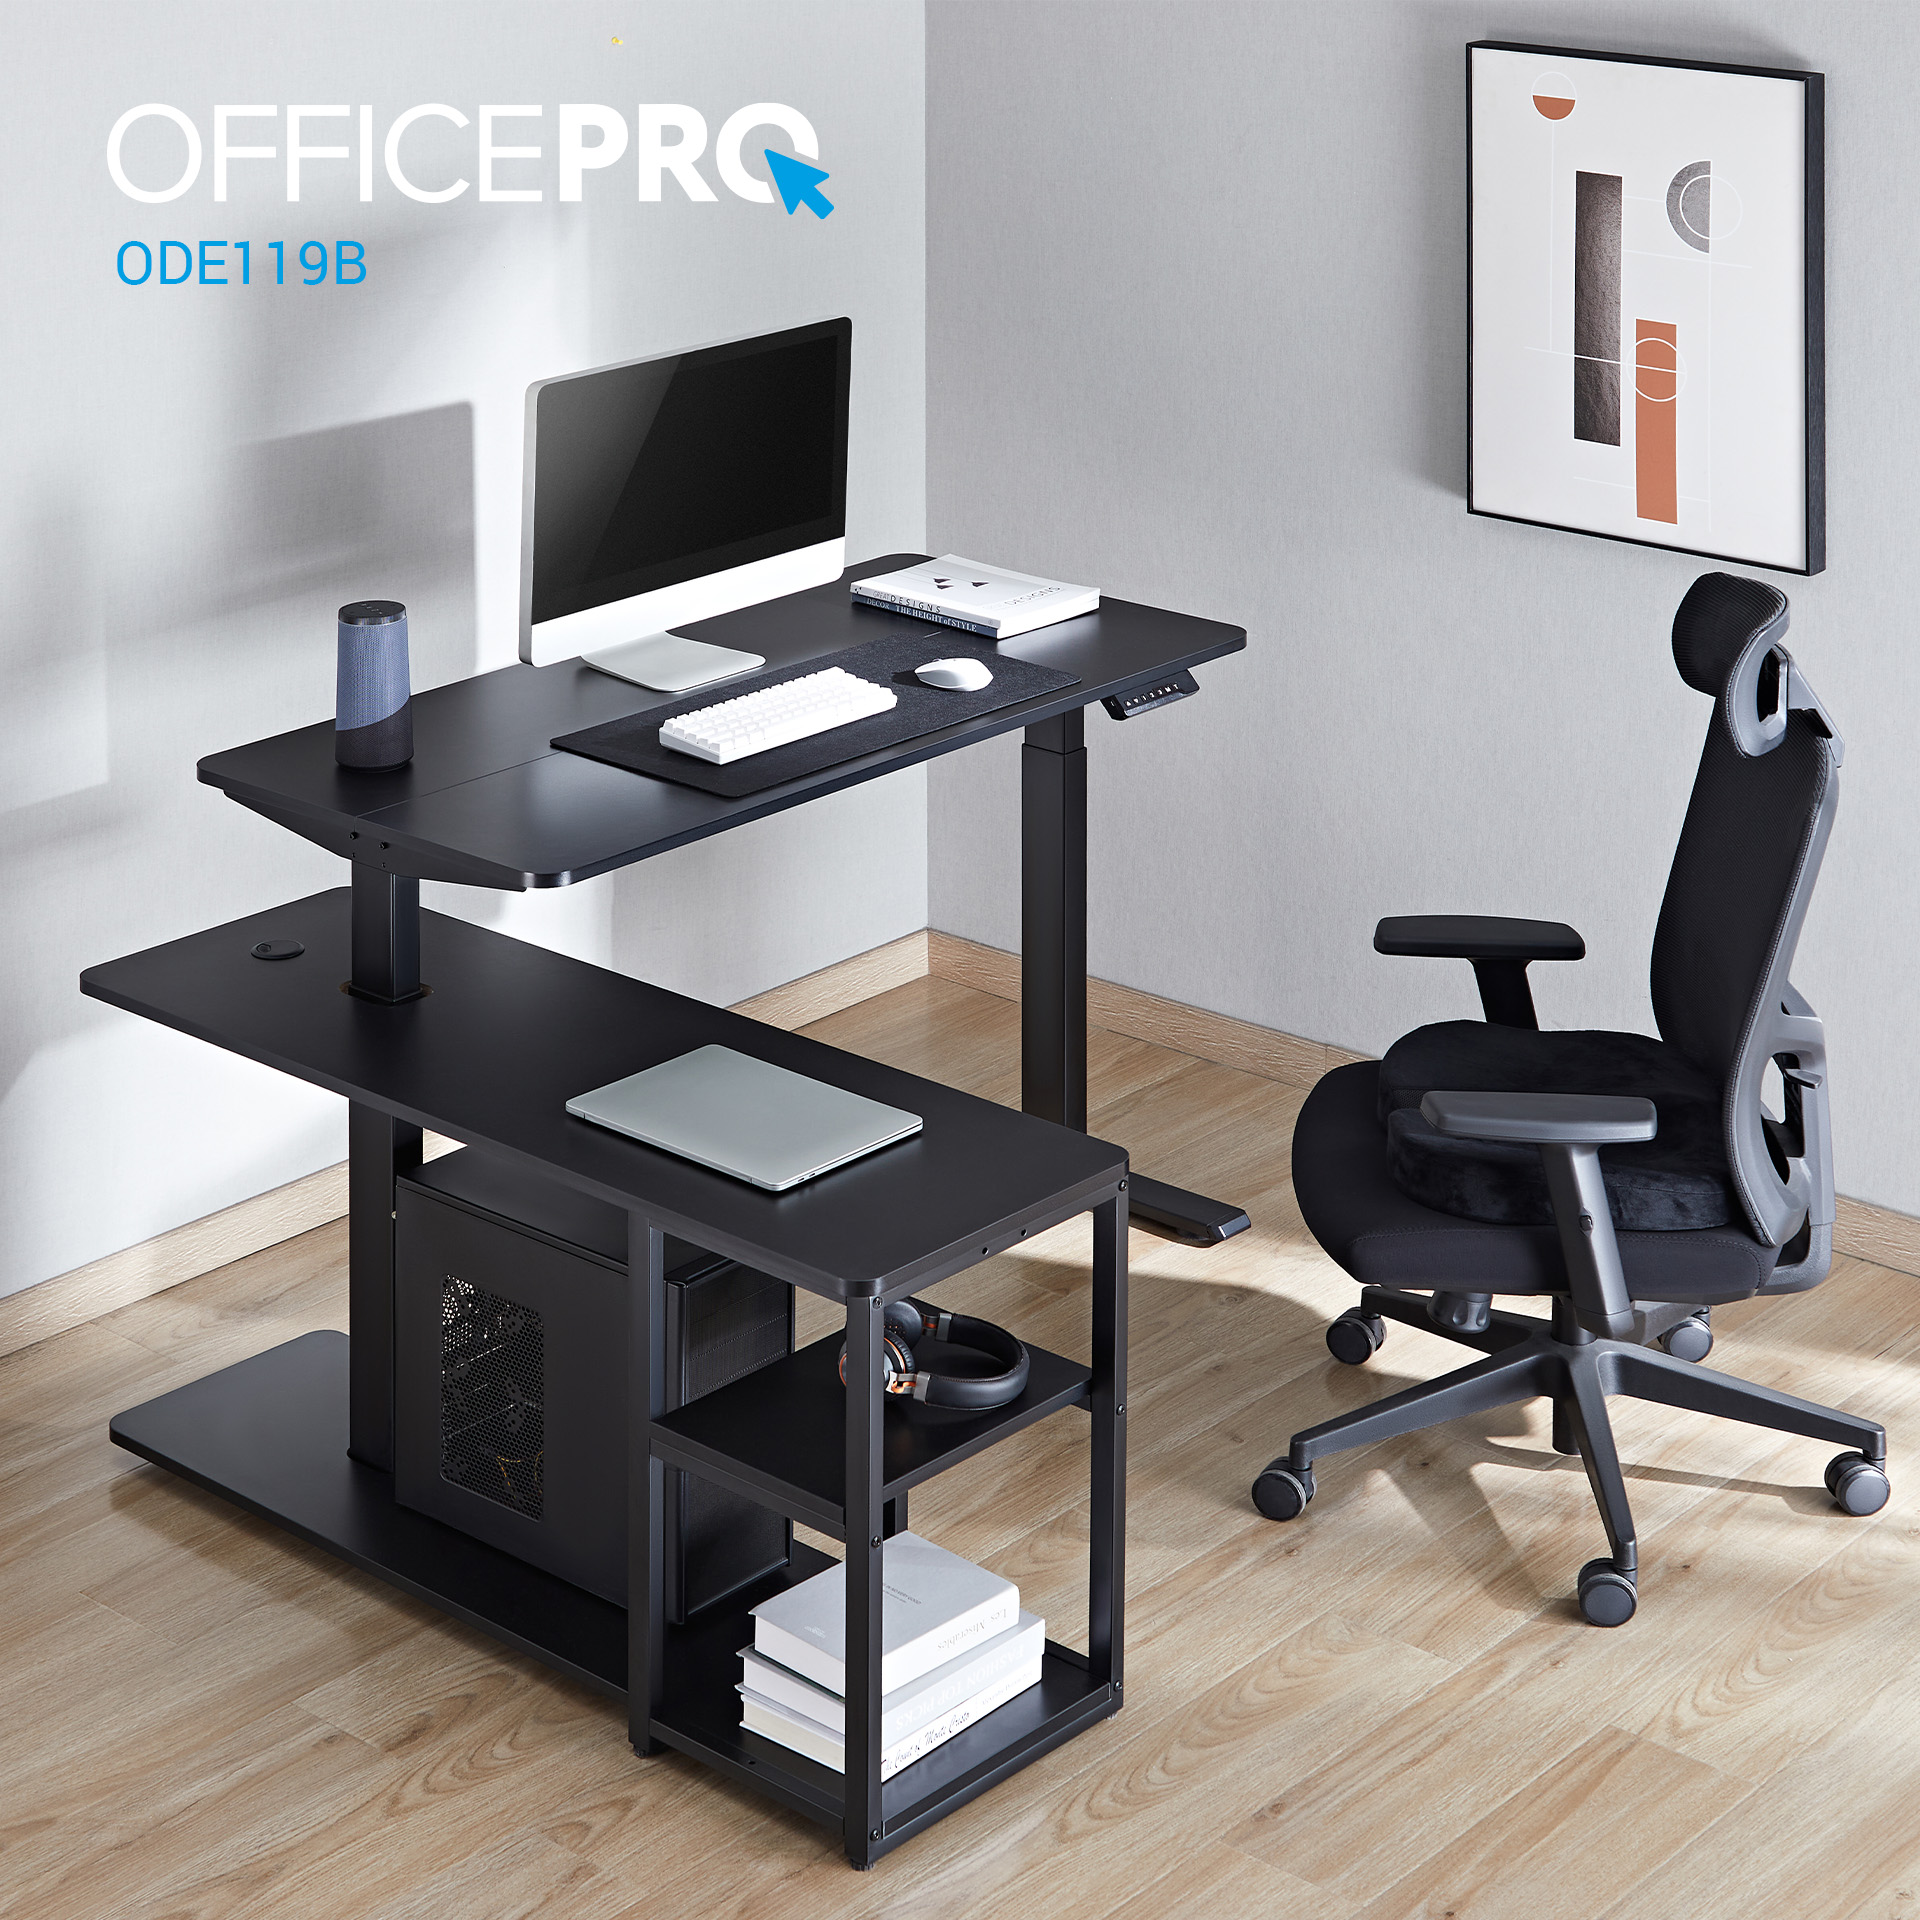 Комп'ютерний стіл OfficePro з електрорегулюванням висоти чорний (ODE119B) - фото 16